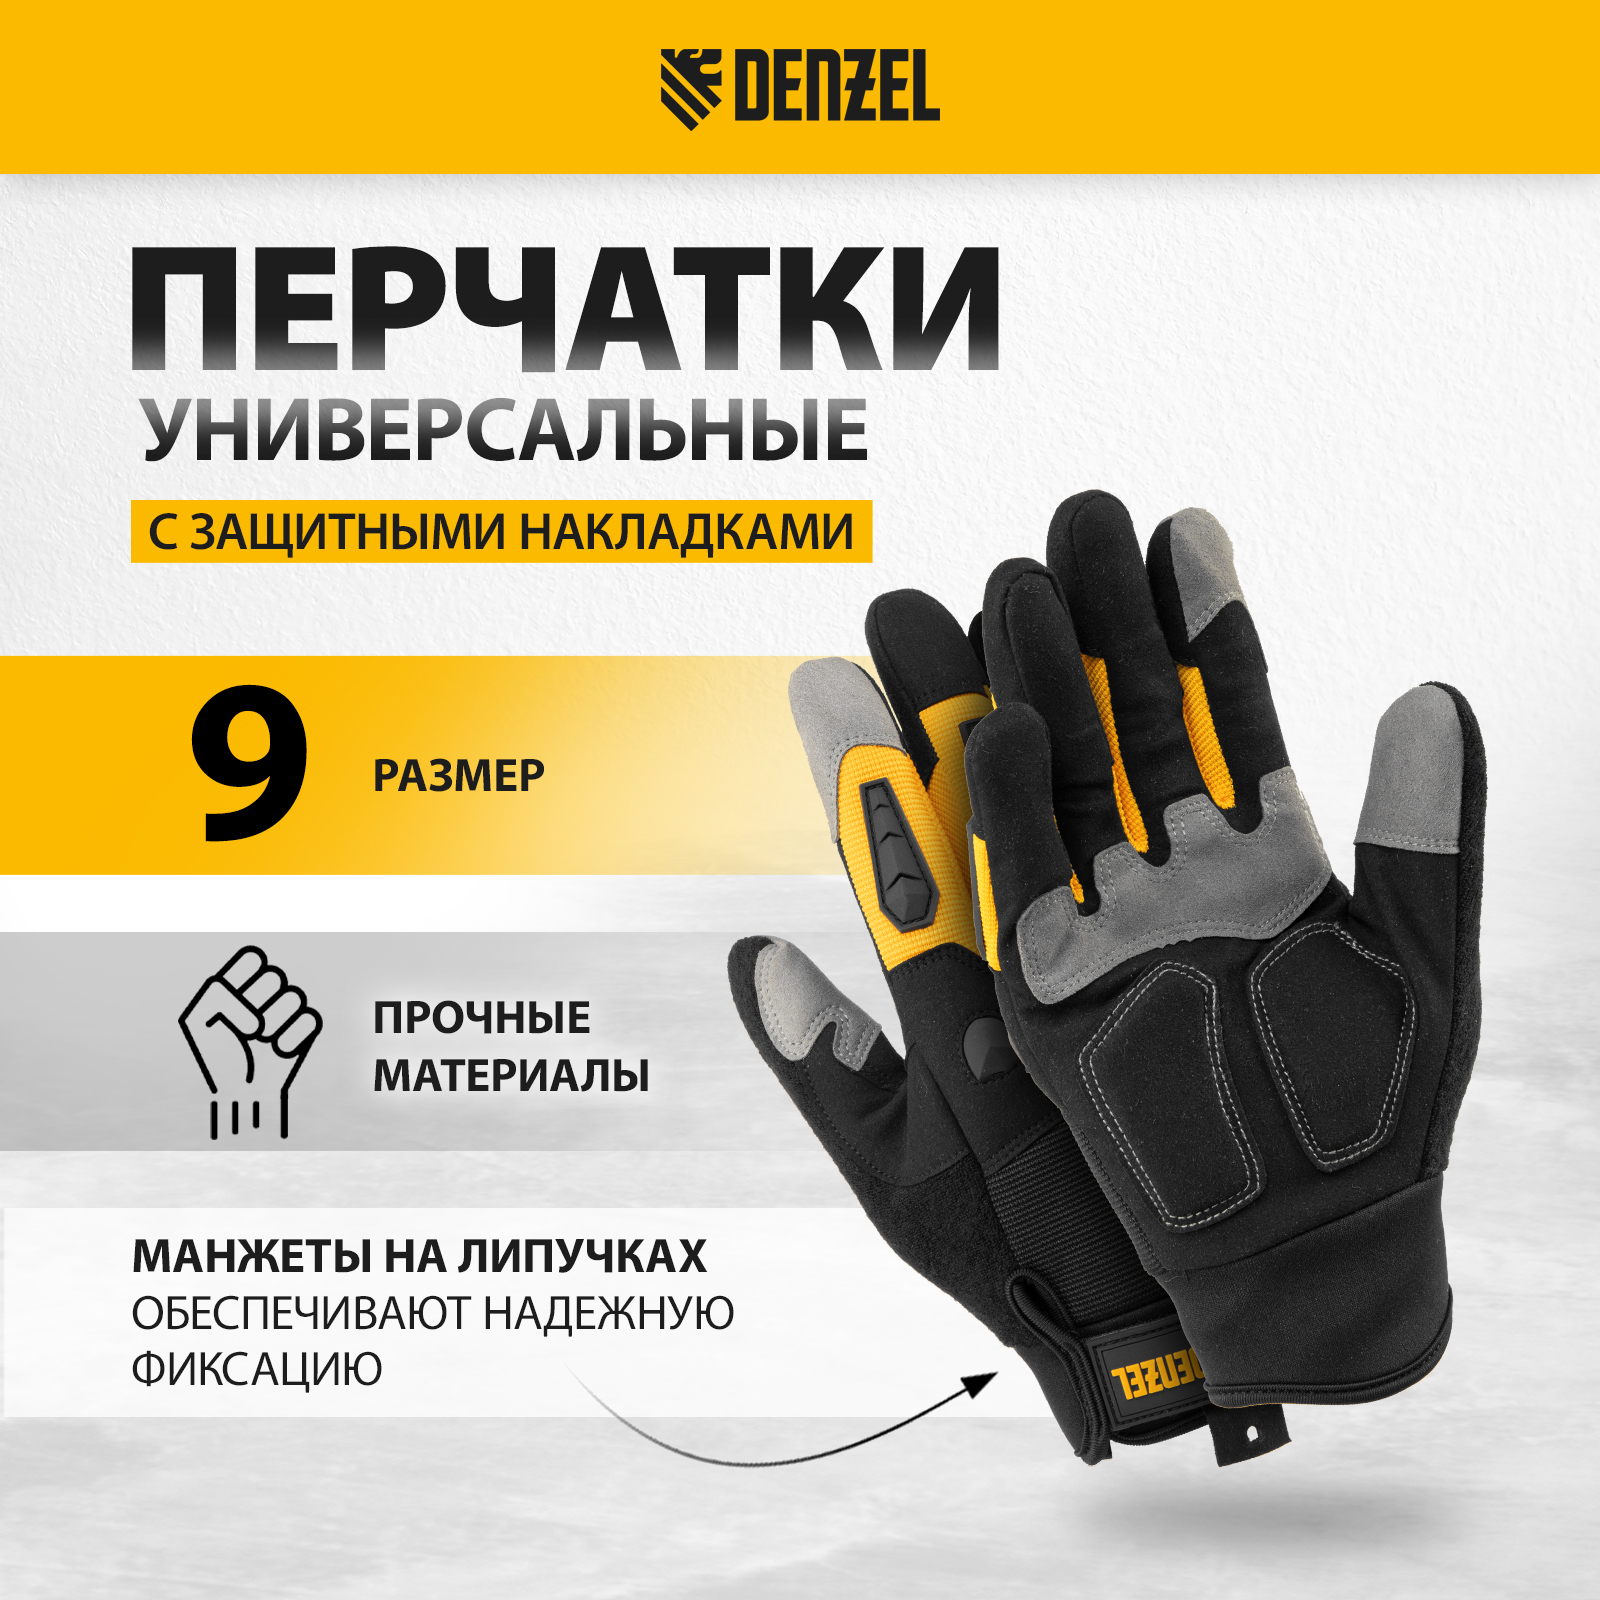 Перчатки универсальные DENZEL размер 9 68002 перчатки универсальные denzel усиленные с защитными накладками 68003